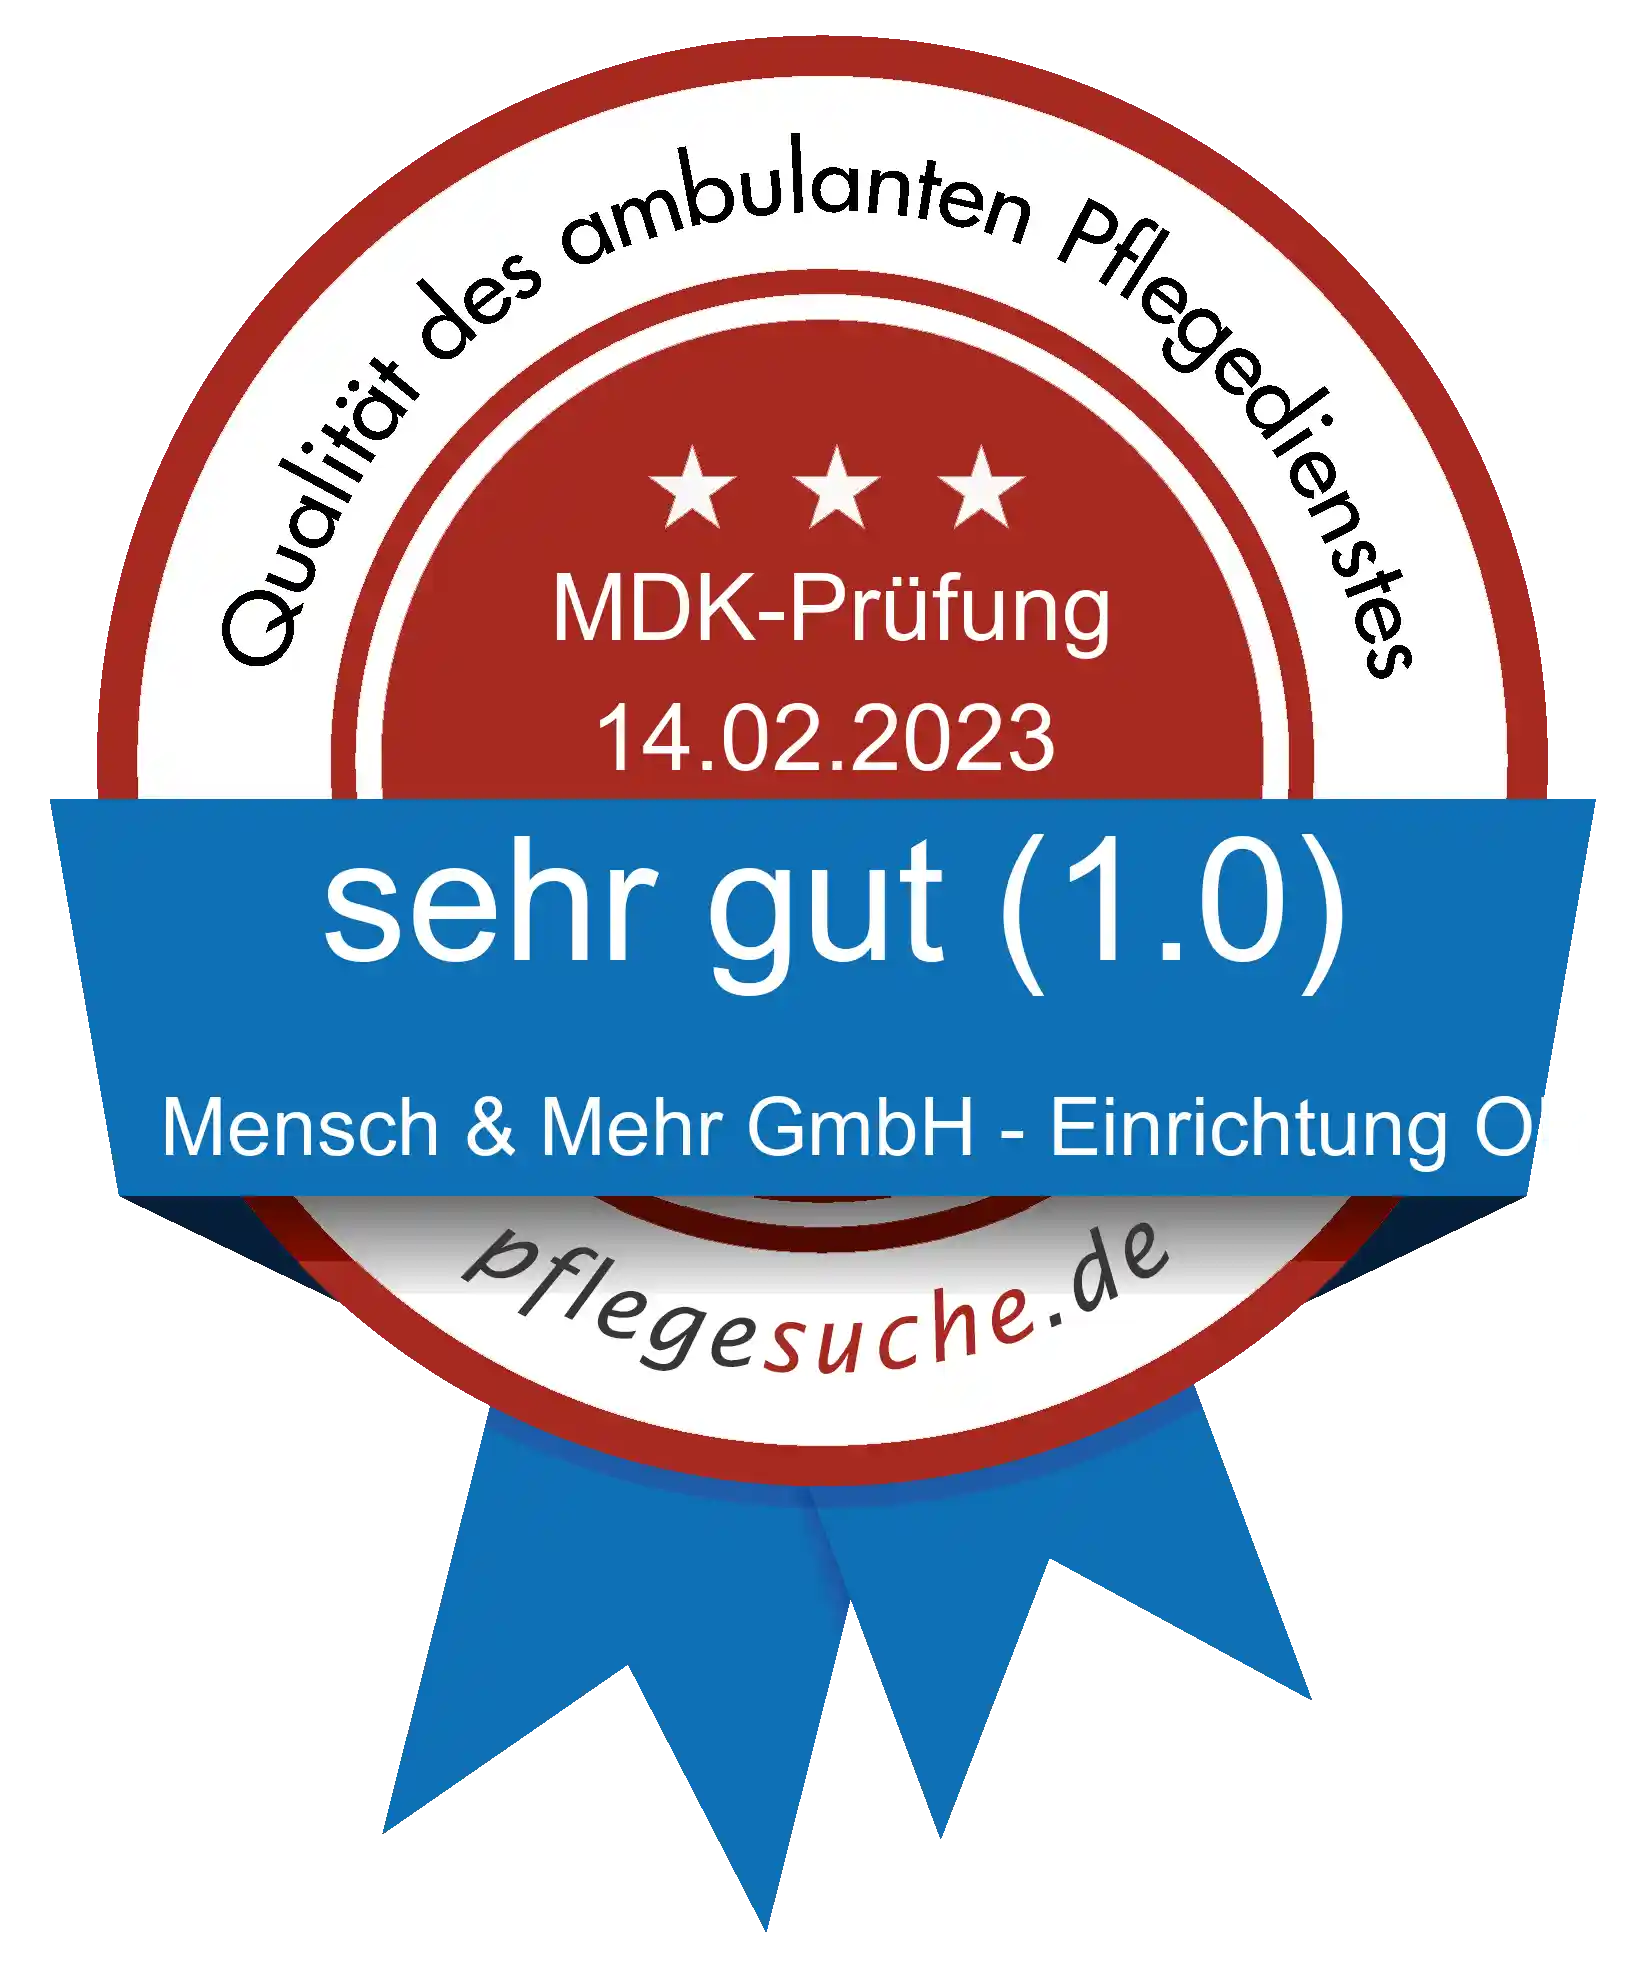 Siegel Benotung: Mensch & Mehr GmbH - Einrichtung OHV